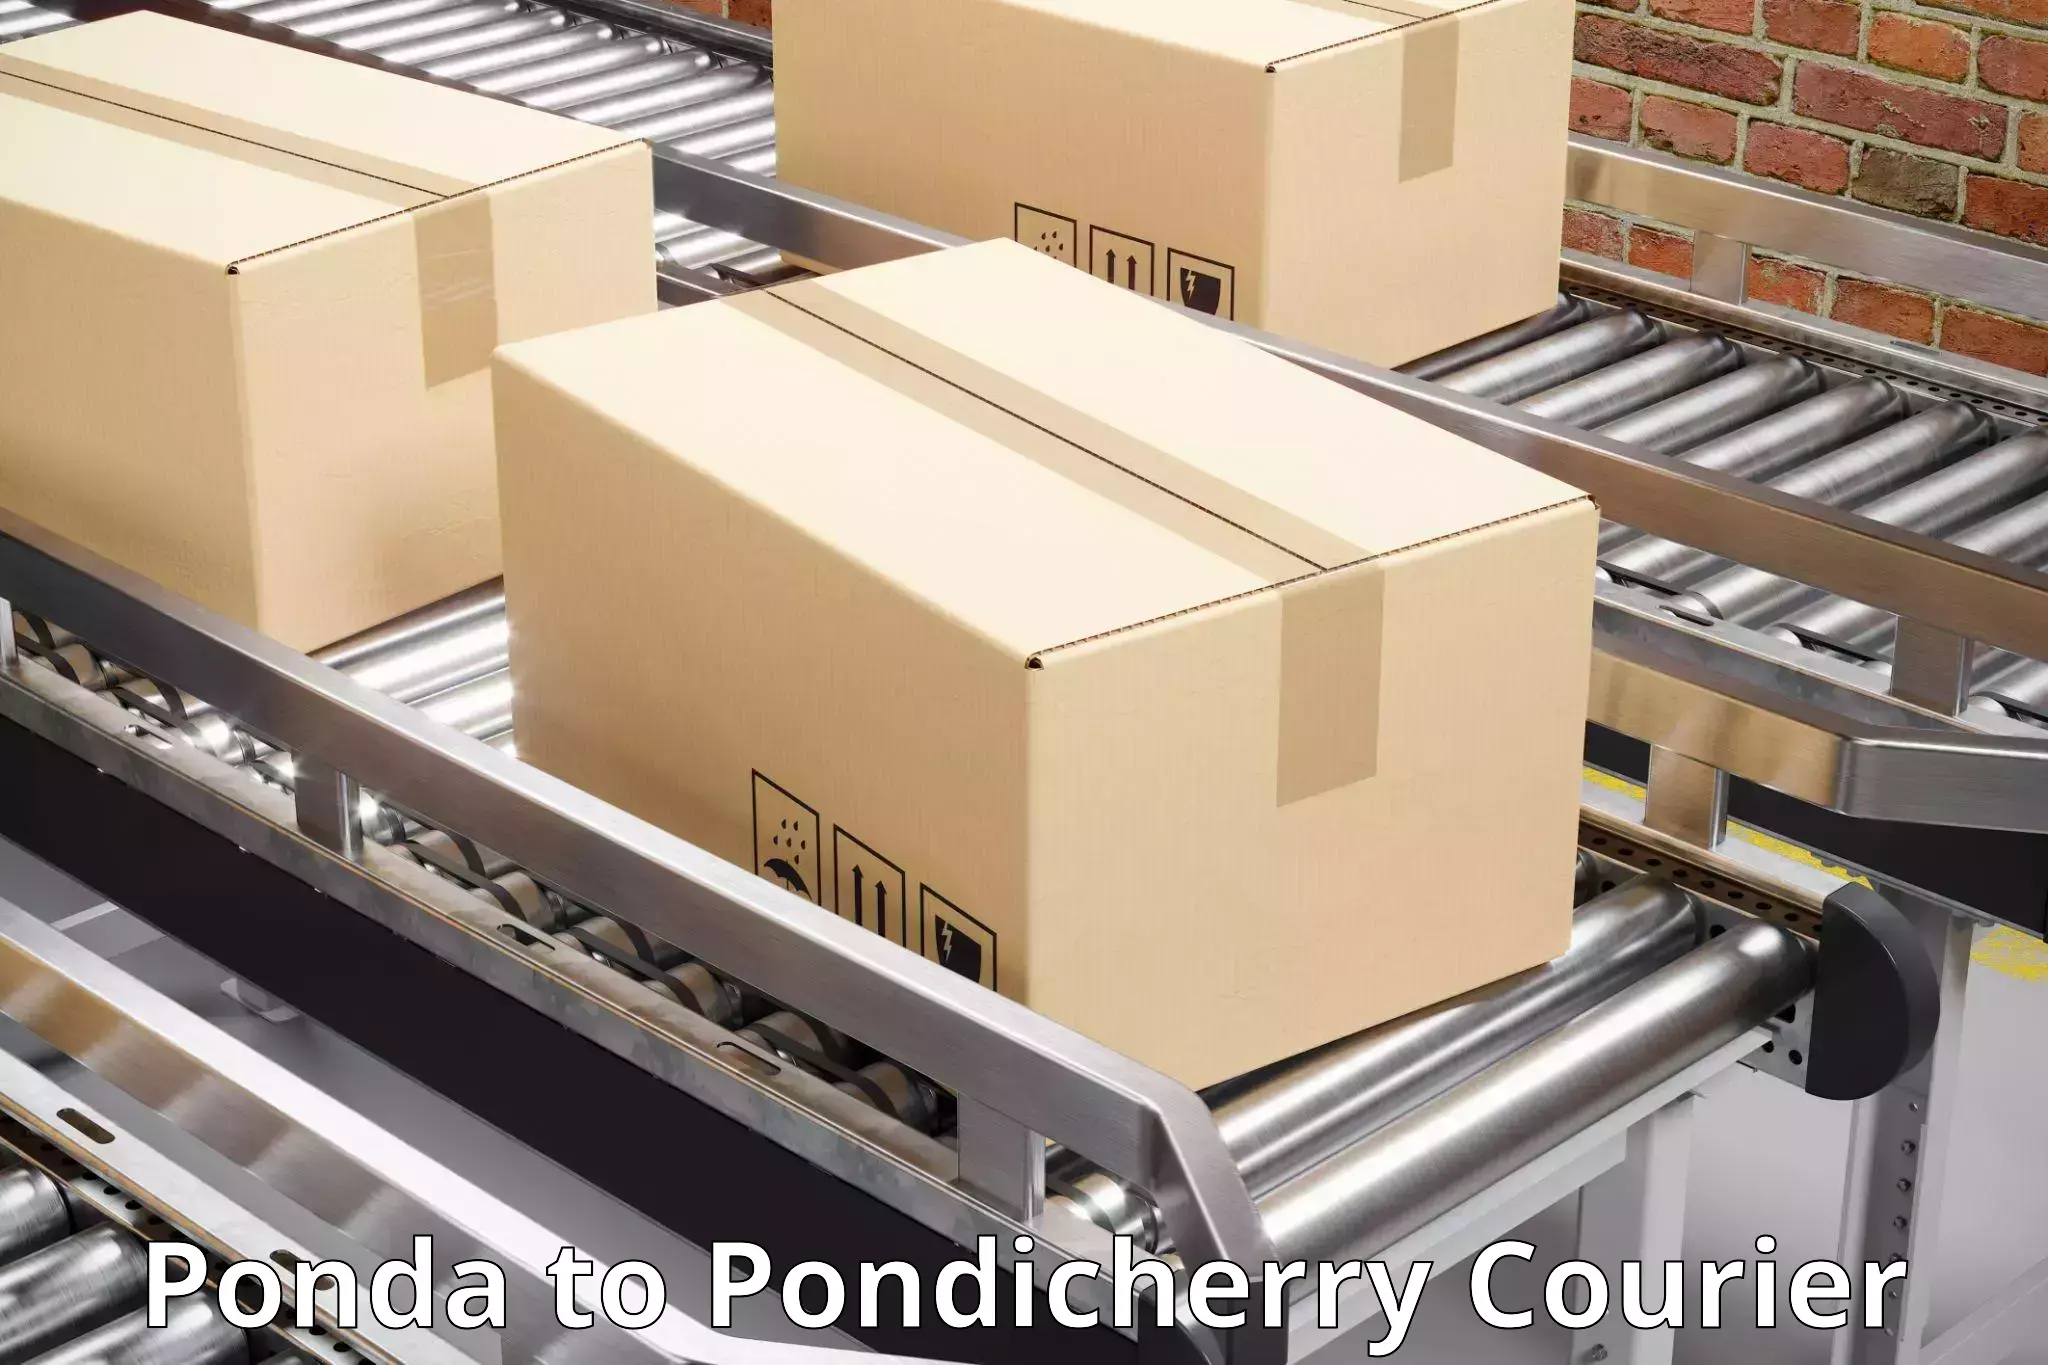 Urgent courier needs in Ponda to Pondicherry